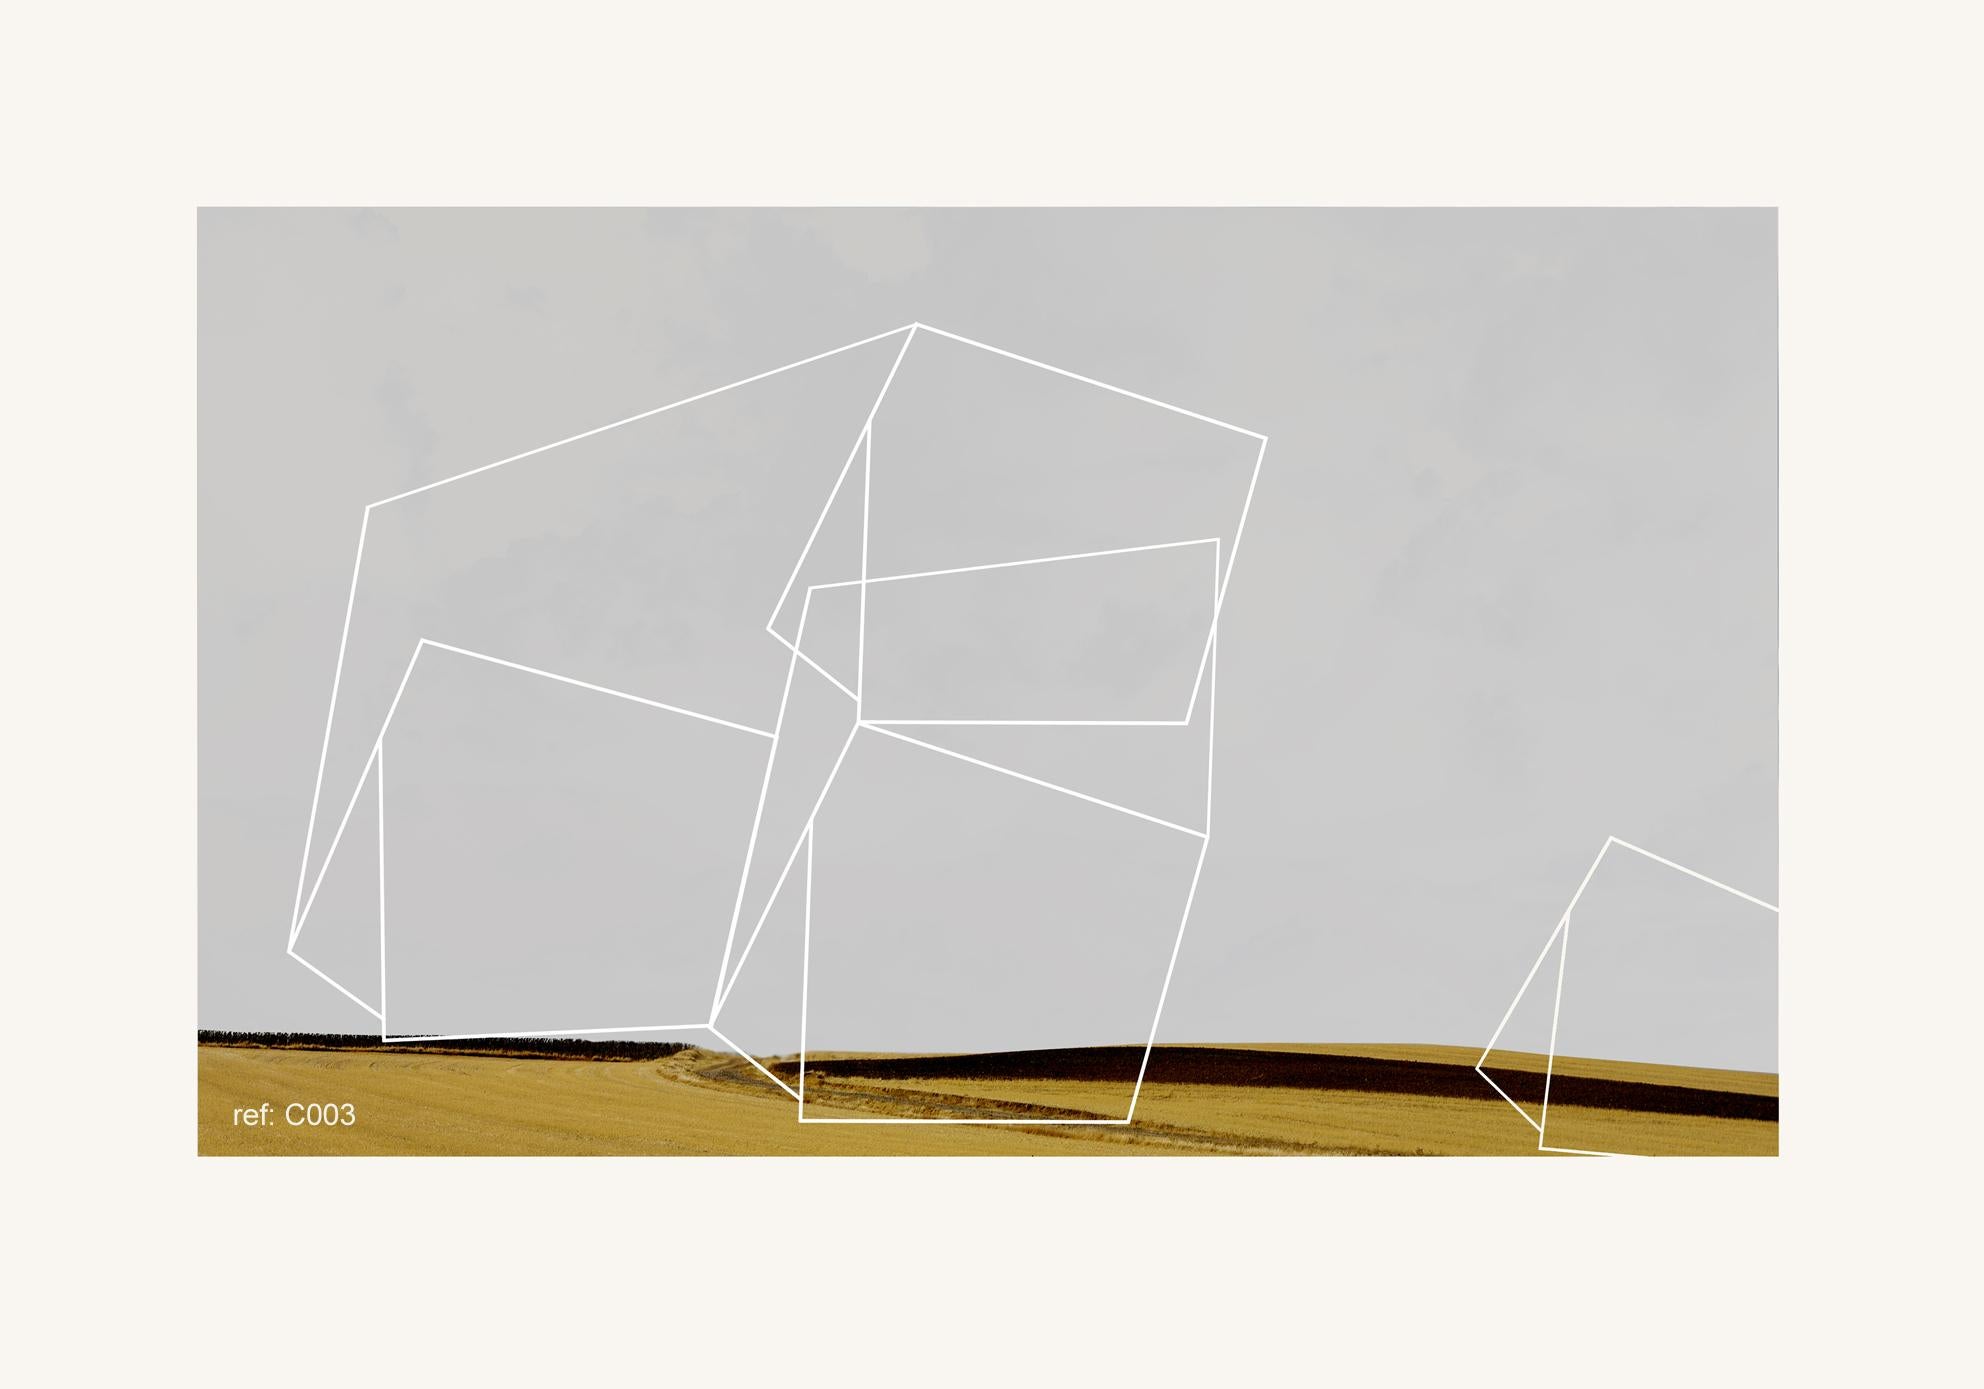 Francisco Nicolás Abstract Print – Esto - Zeitgenössisch, Abstrakt, Pop Art, Surrealistisch, geometrisch, Landschaft 